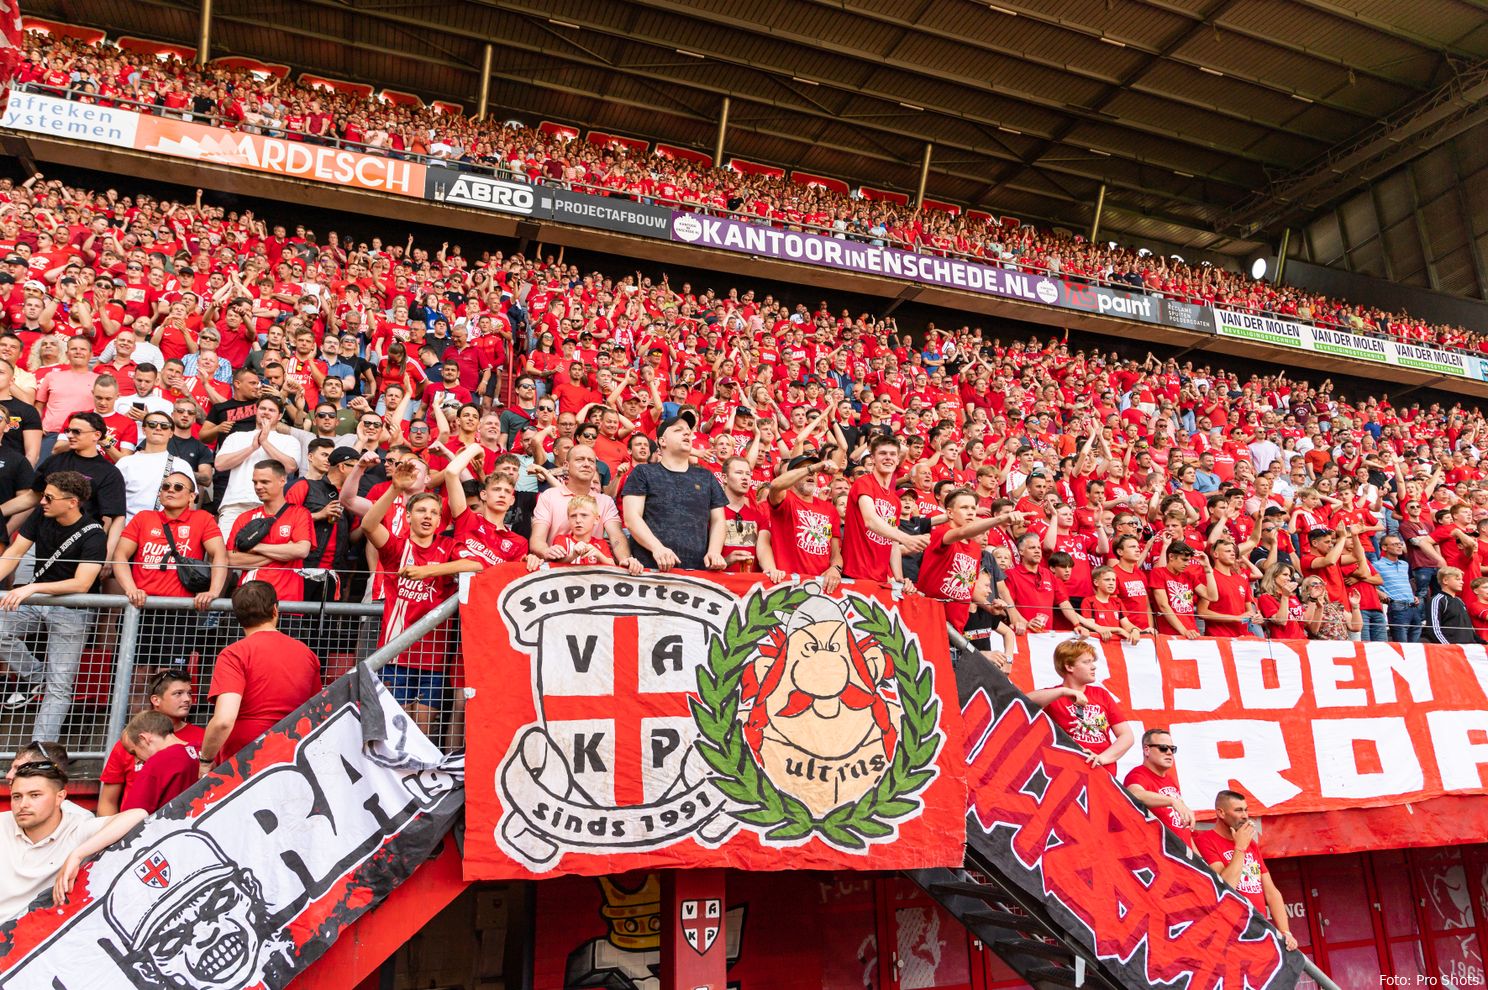 supporters vak p in het rood fc twente sc heerenveen play offs 2022 2023